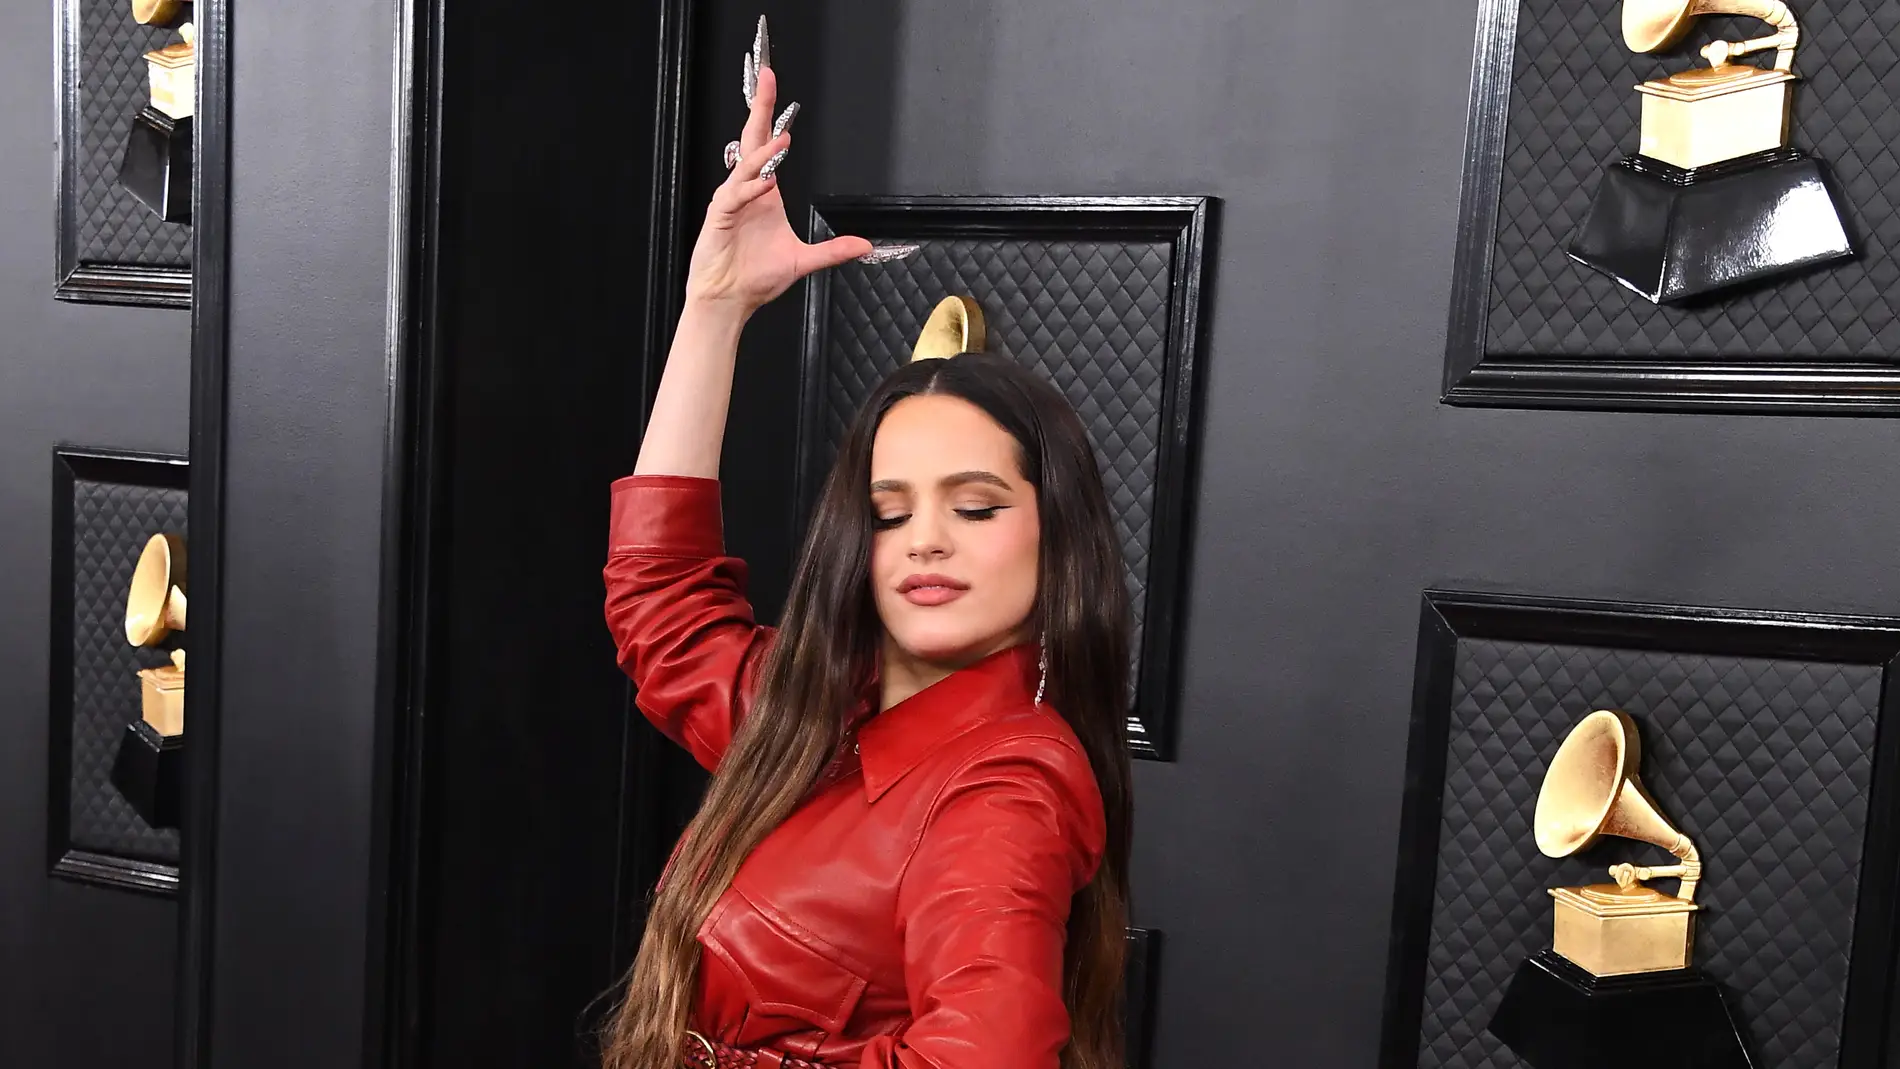 Rosalía en los Grammy 2020